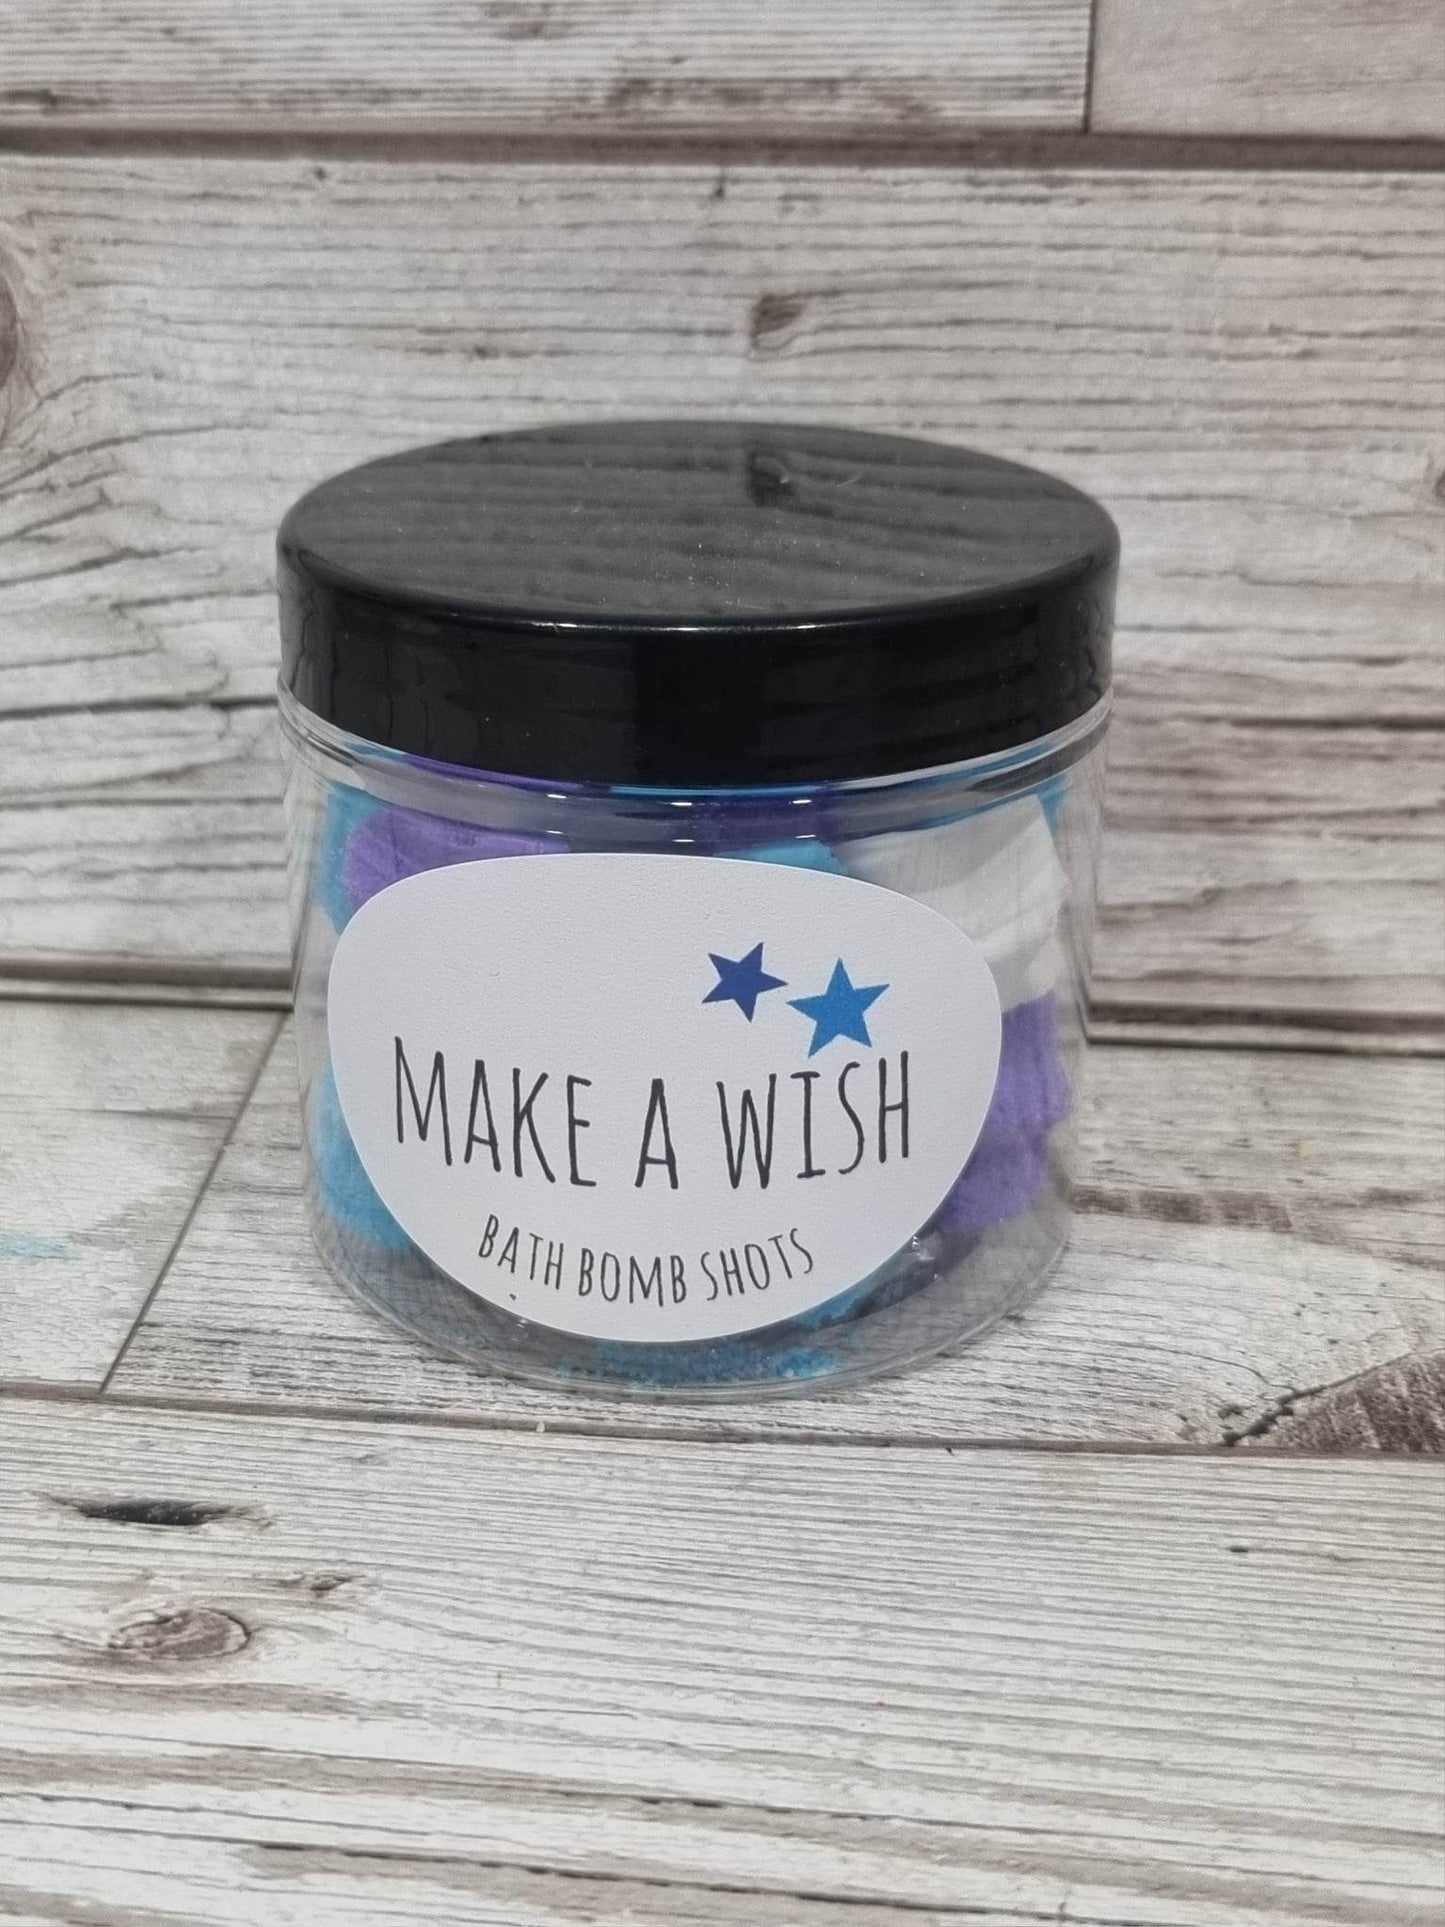 'Make a Wish' Bath Bomb Shots